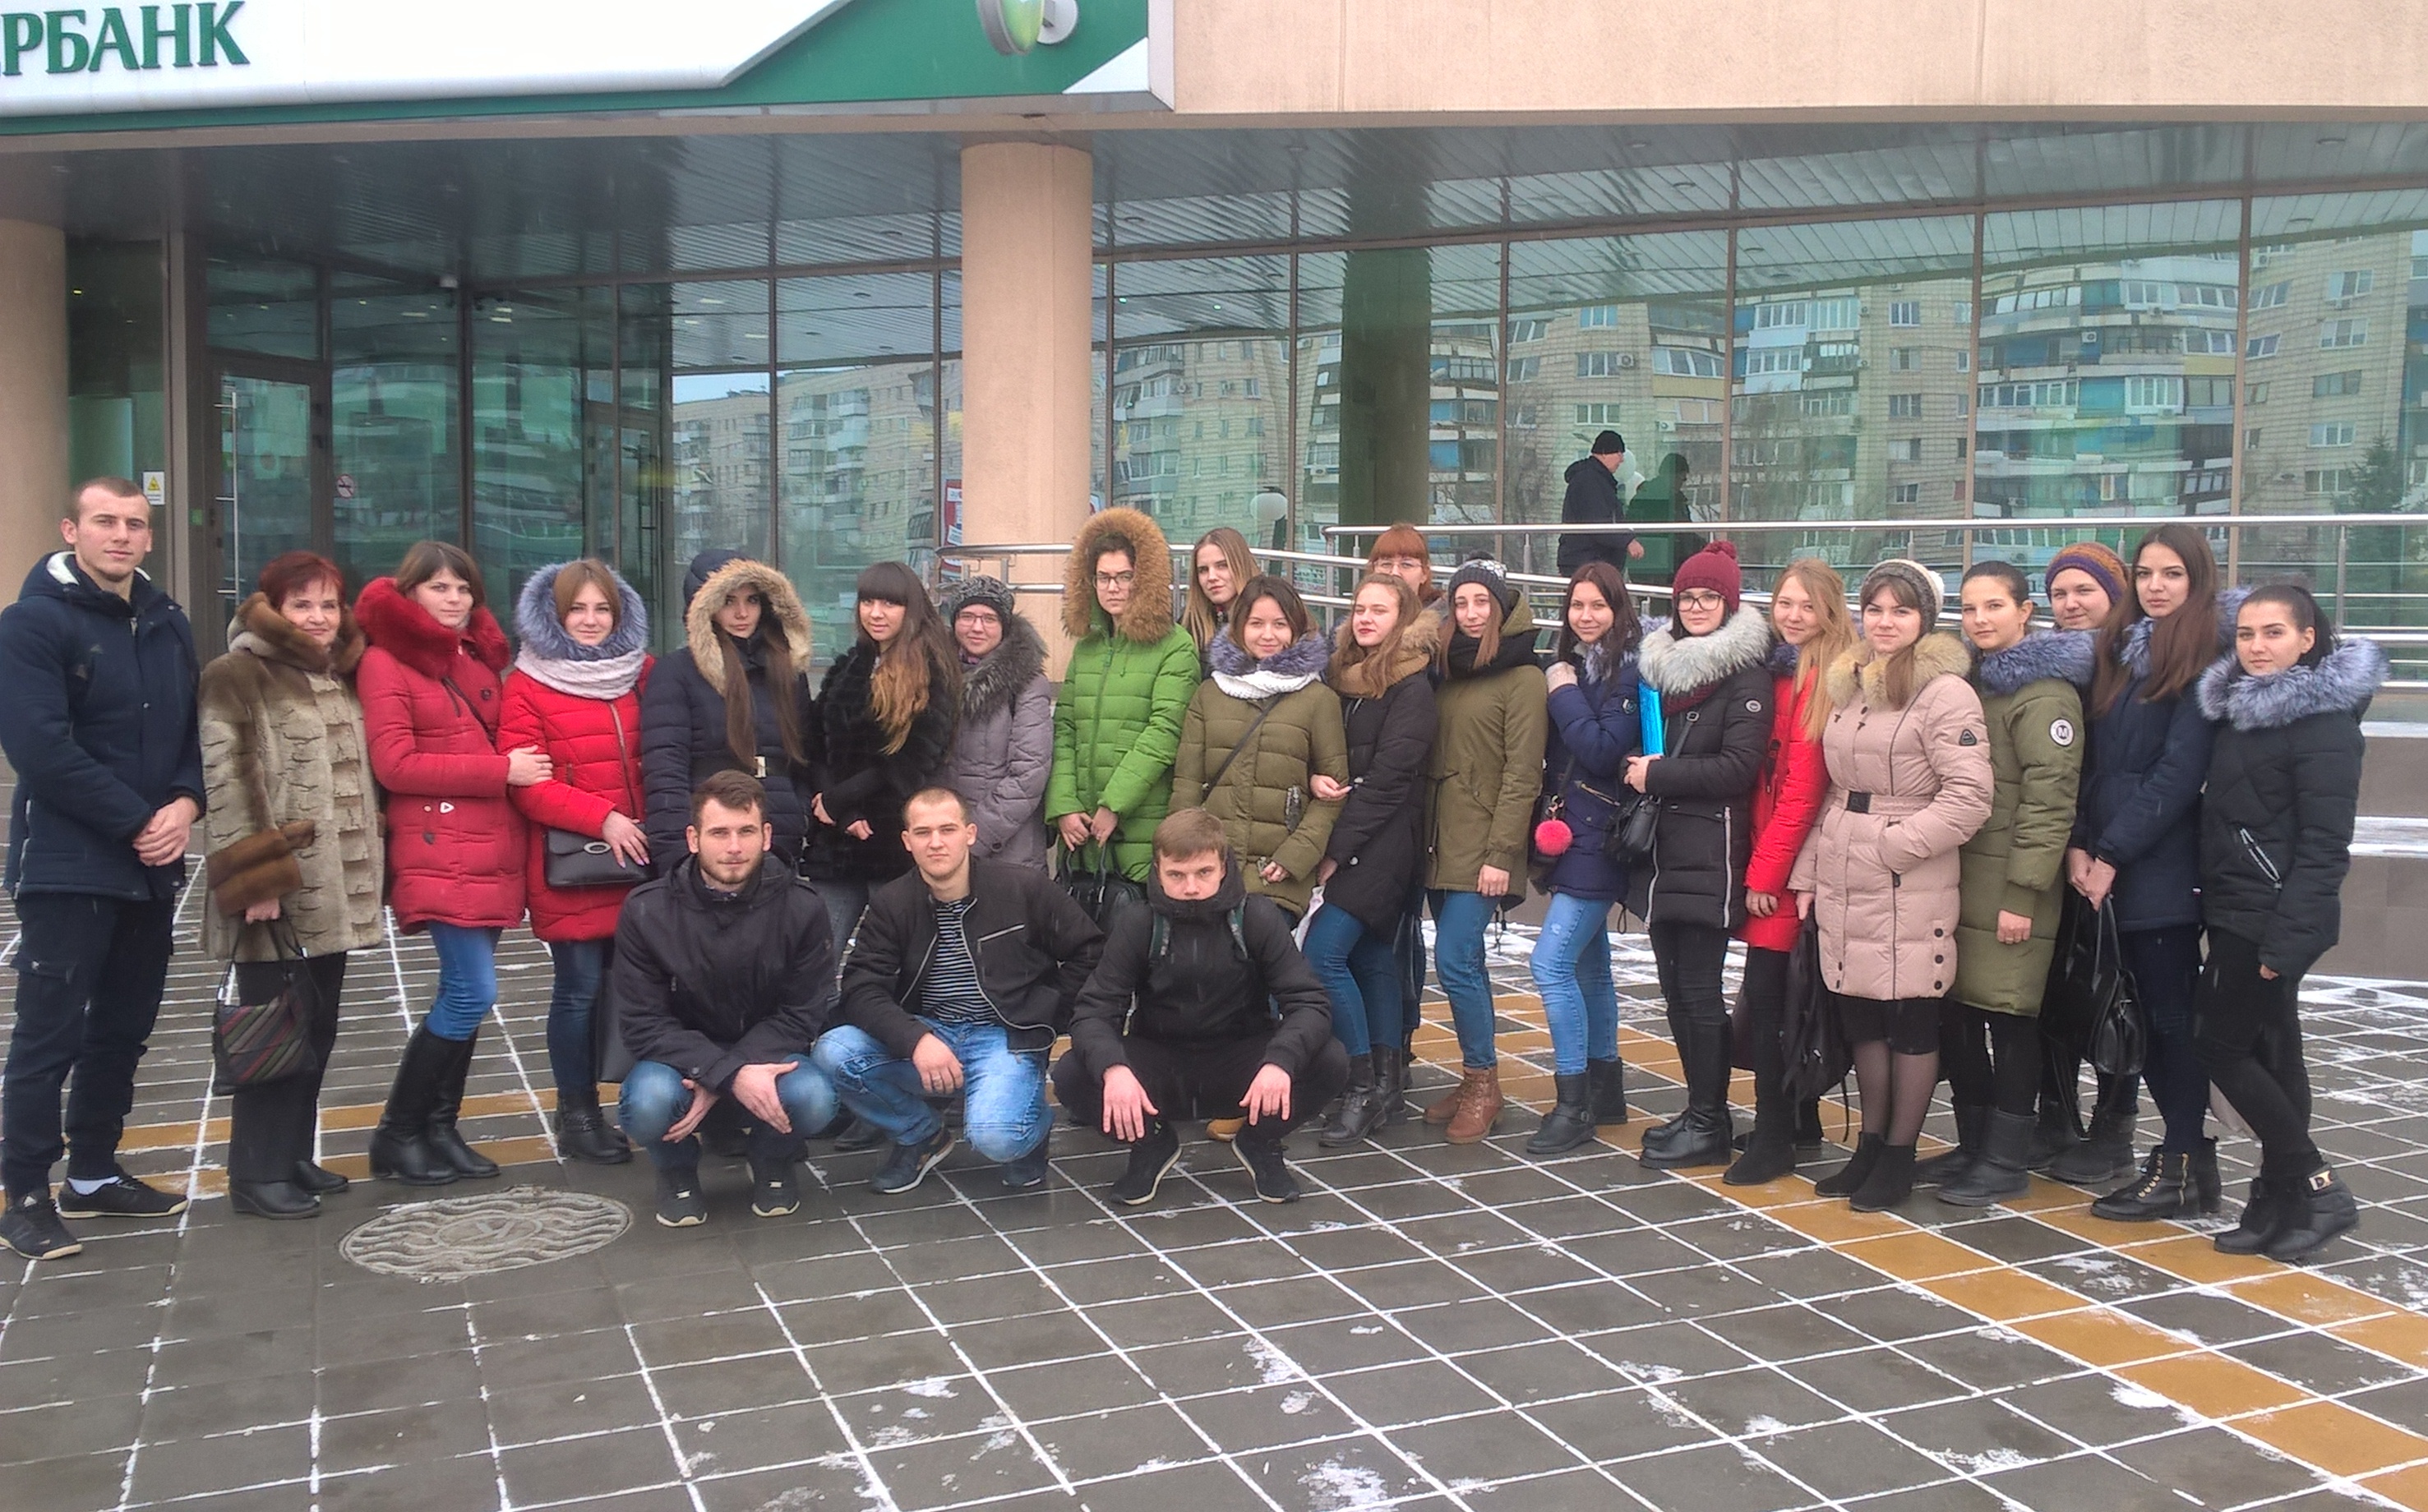 Студенты Волгоградского энергетического колледжа посетили Региональный Контактный центр ПАО Сбербанк – познакомились с рабочими местами на период производственной практики и возможностью дальнейшего трудоустройства